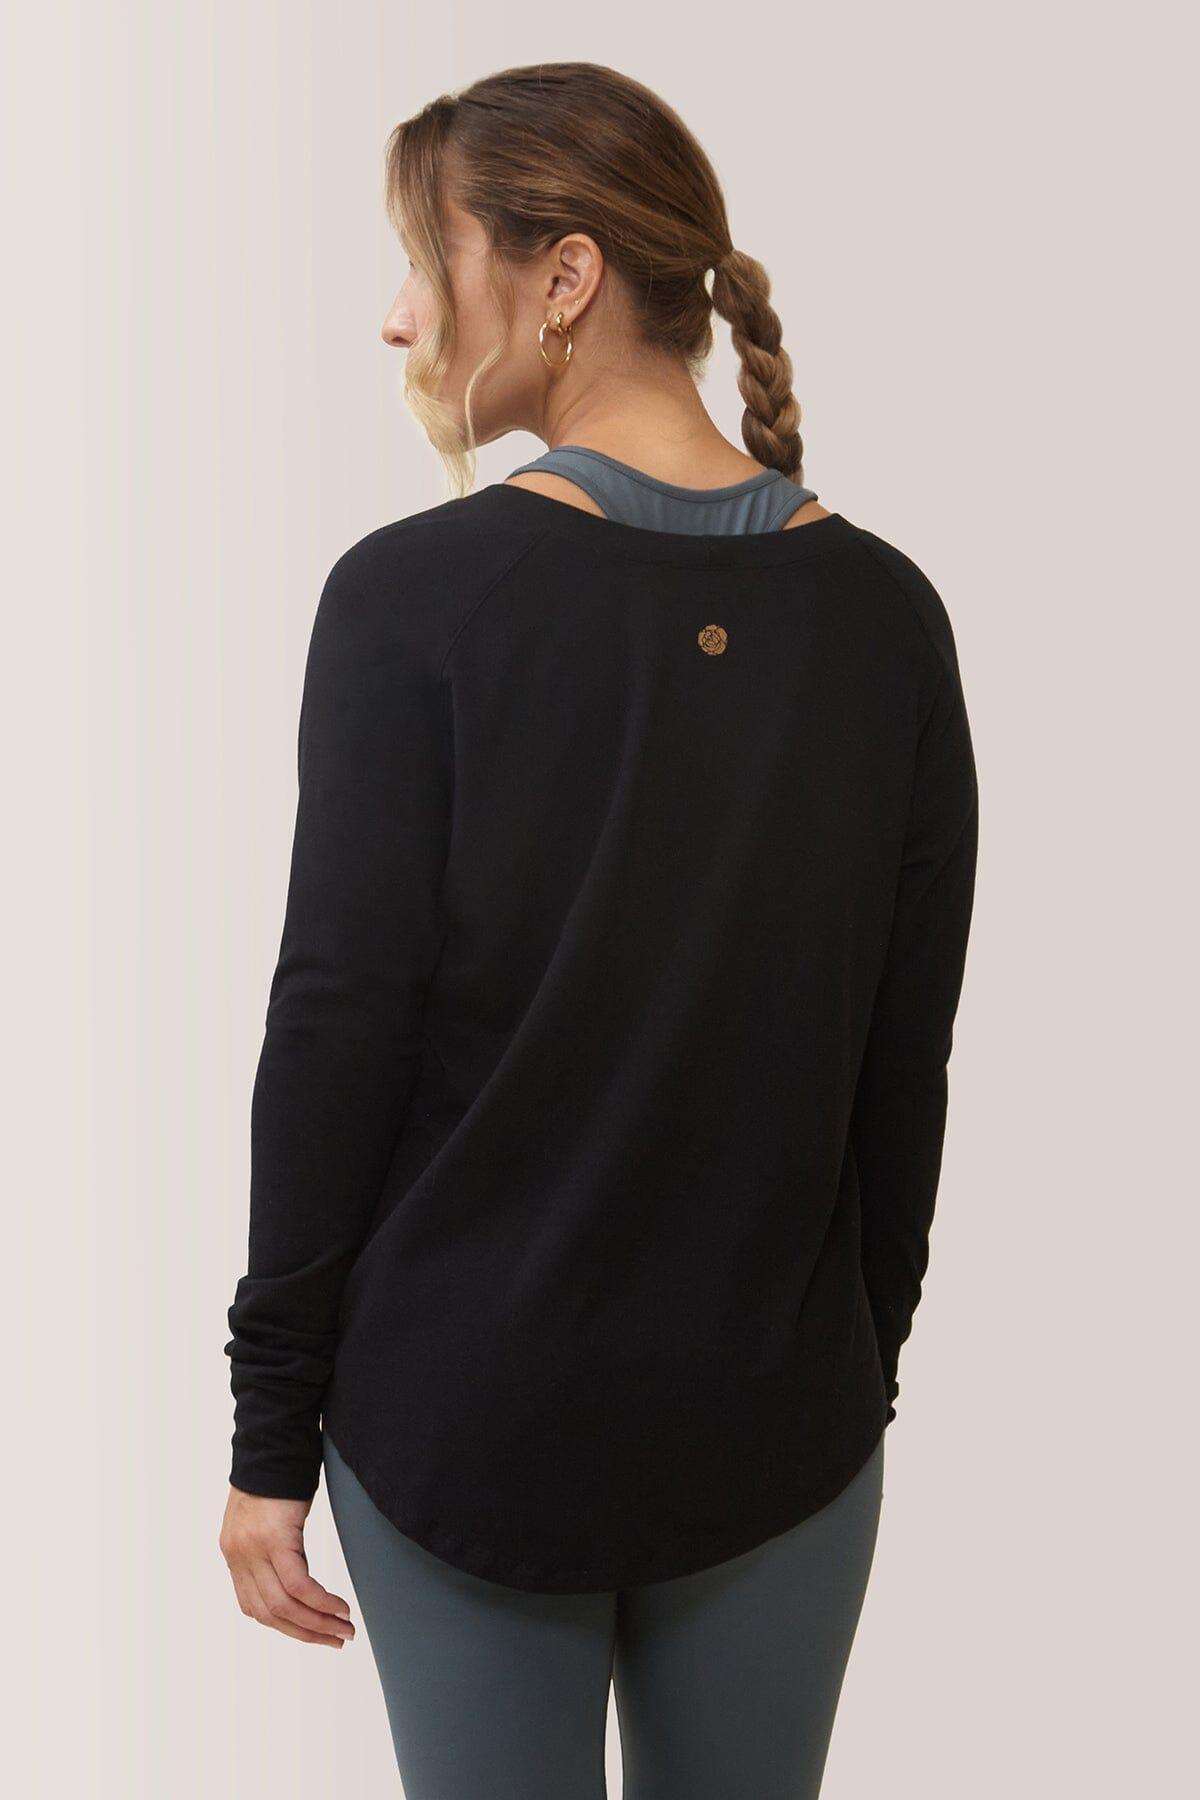 Femme qui porte le chandail à manche longue Cozy de Rose Boreal./ Women wearing the Cozy Long Sleeve Shirt by Rose Boreal. -Total Eclipse